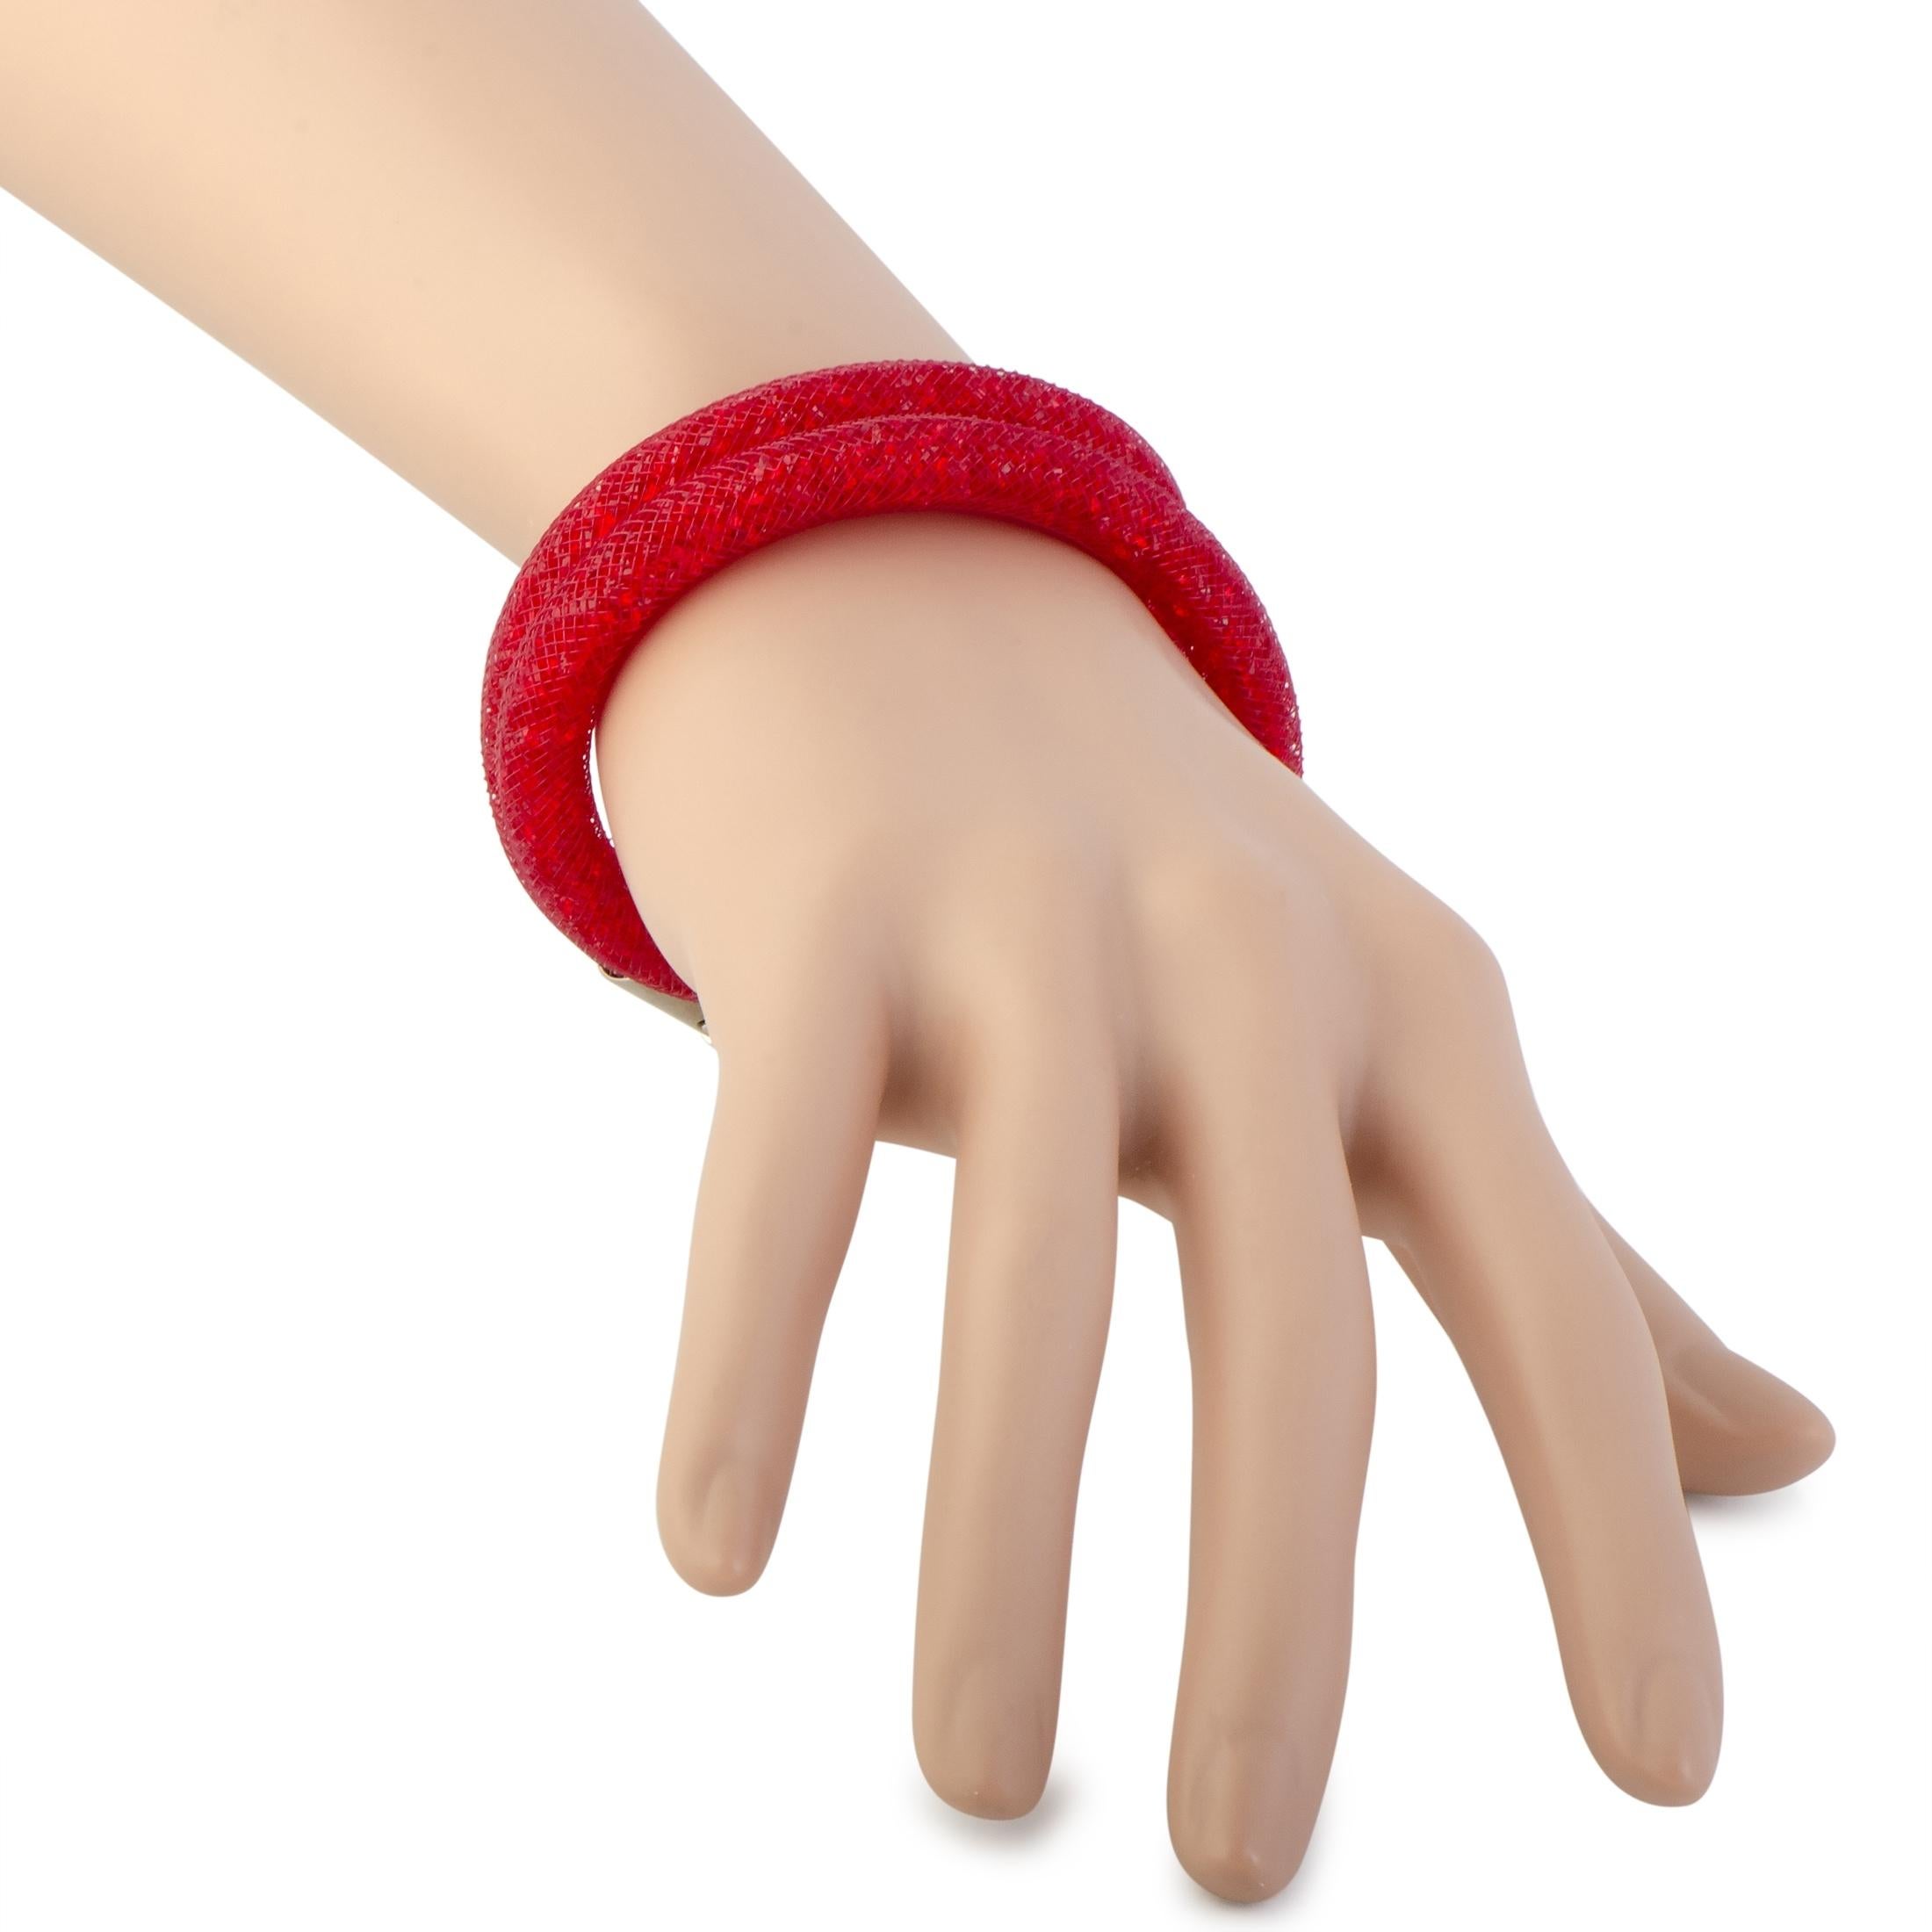 D'un rouge éclatant, ce bracelet extraordinairement imaginé de la collection 